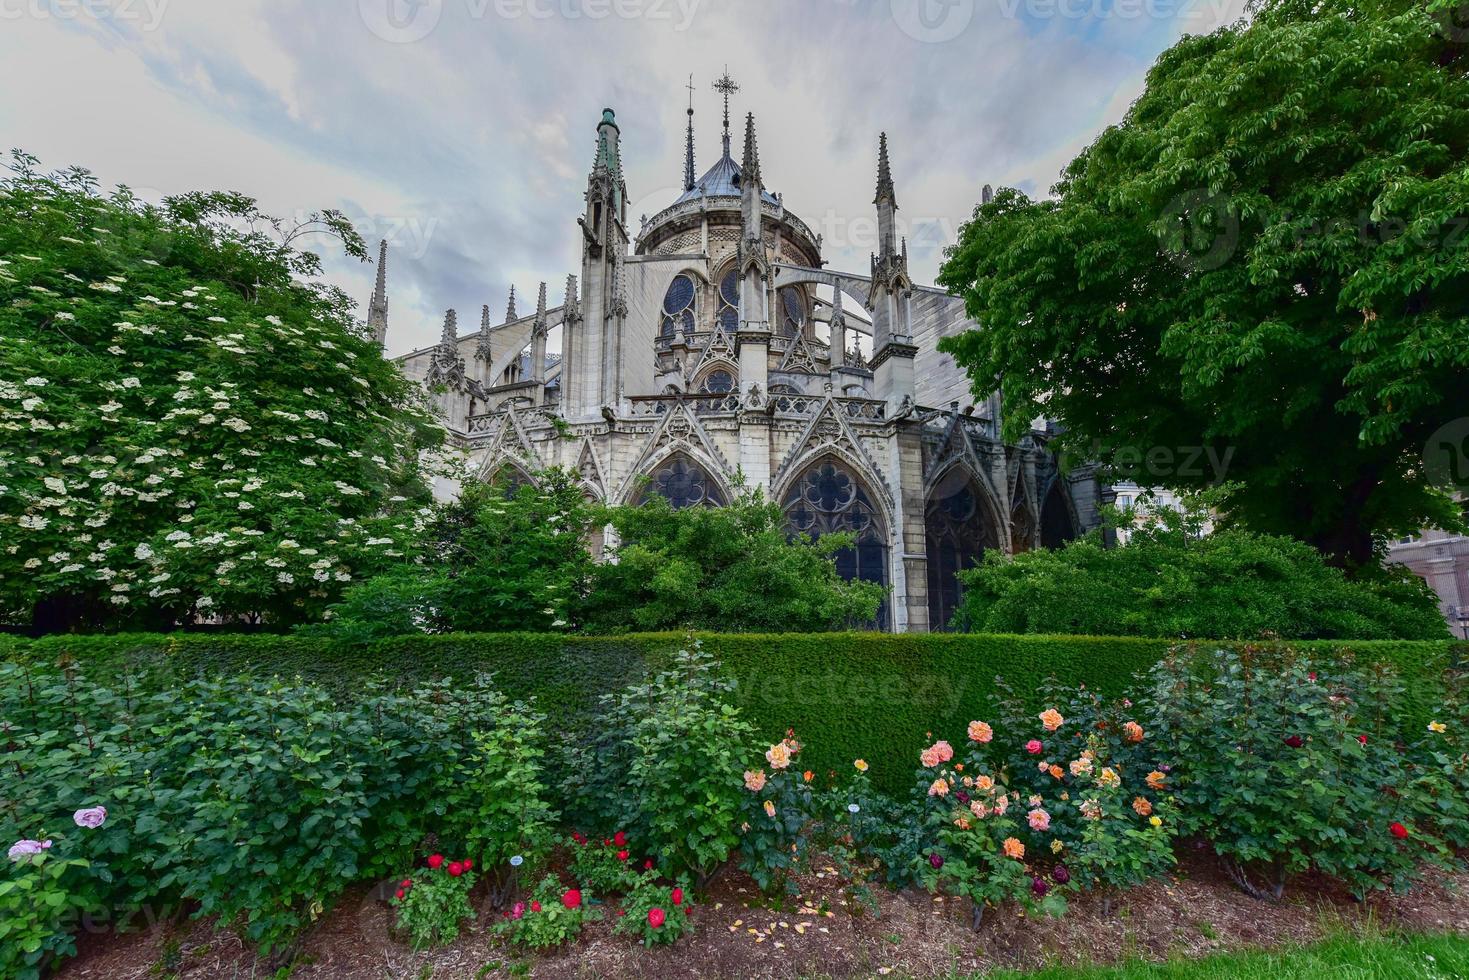 notre-dame de paris est une cathédrale catholique médiévale gothique française sur l'ile de la cite dans le quatrième arrondissement de paris, france. photo